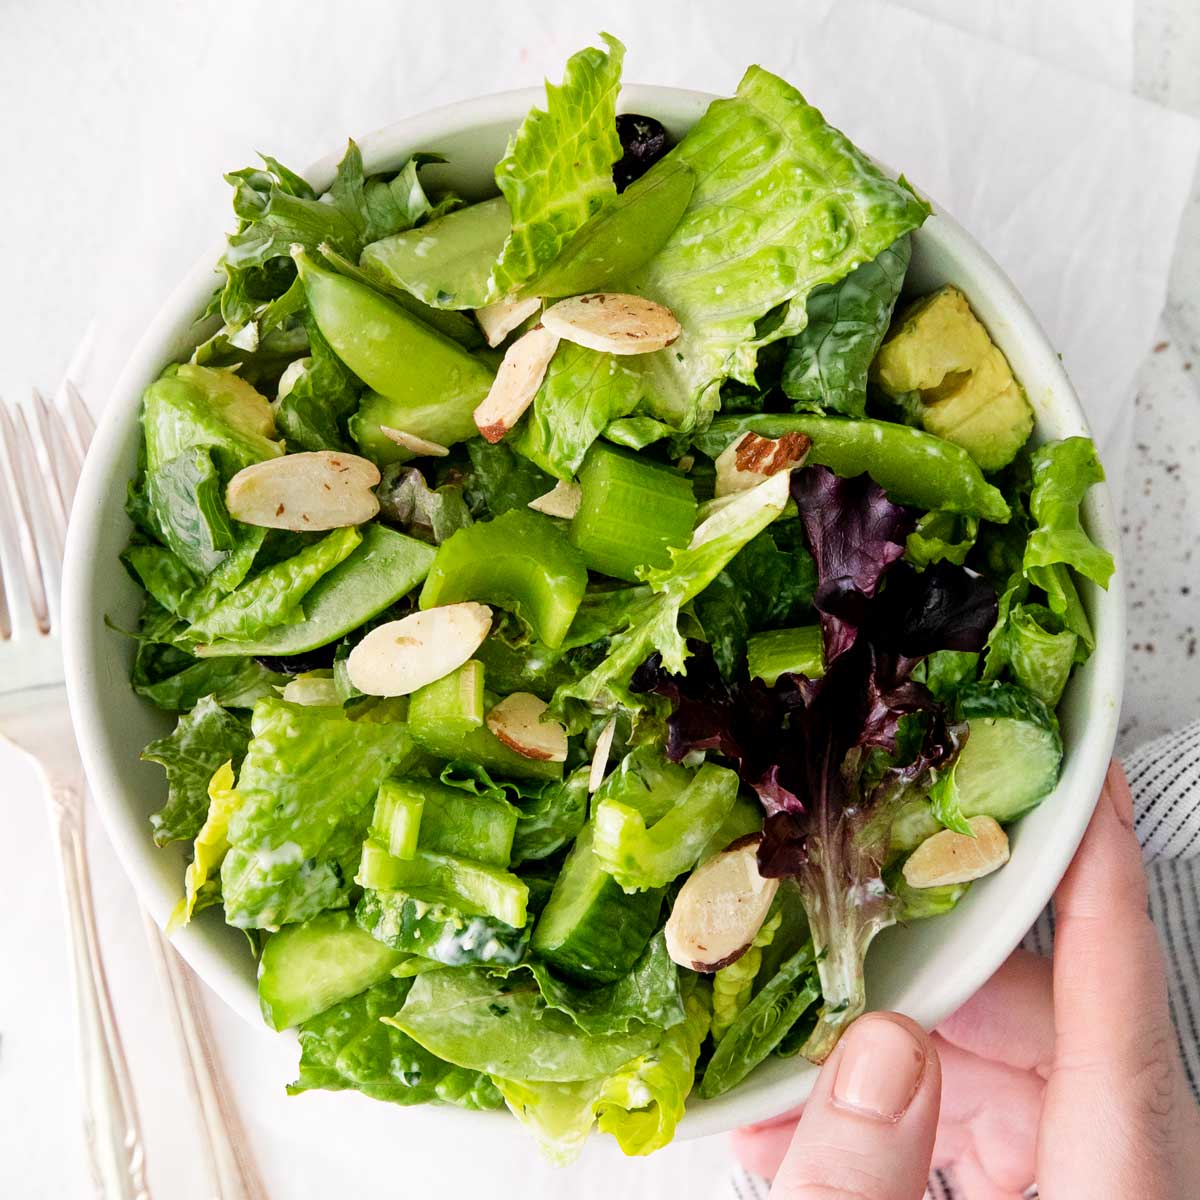 https://fooddoodles.com/wp-content/uploads/2022/05/green-goddess-salad-image-1200.jpg